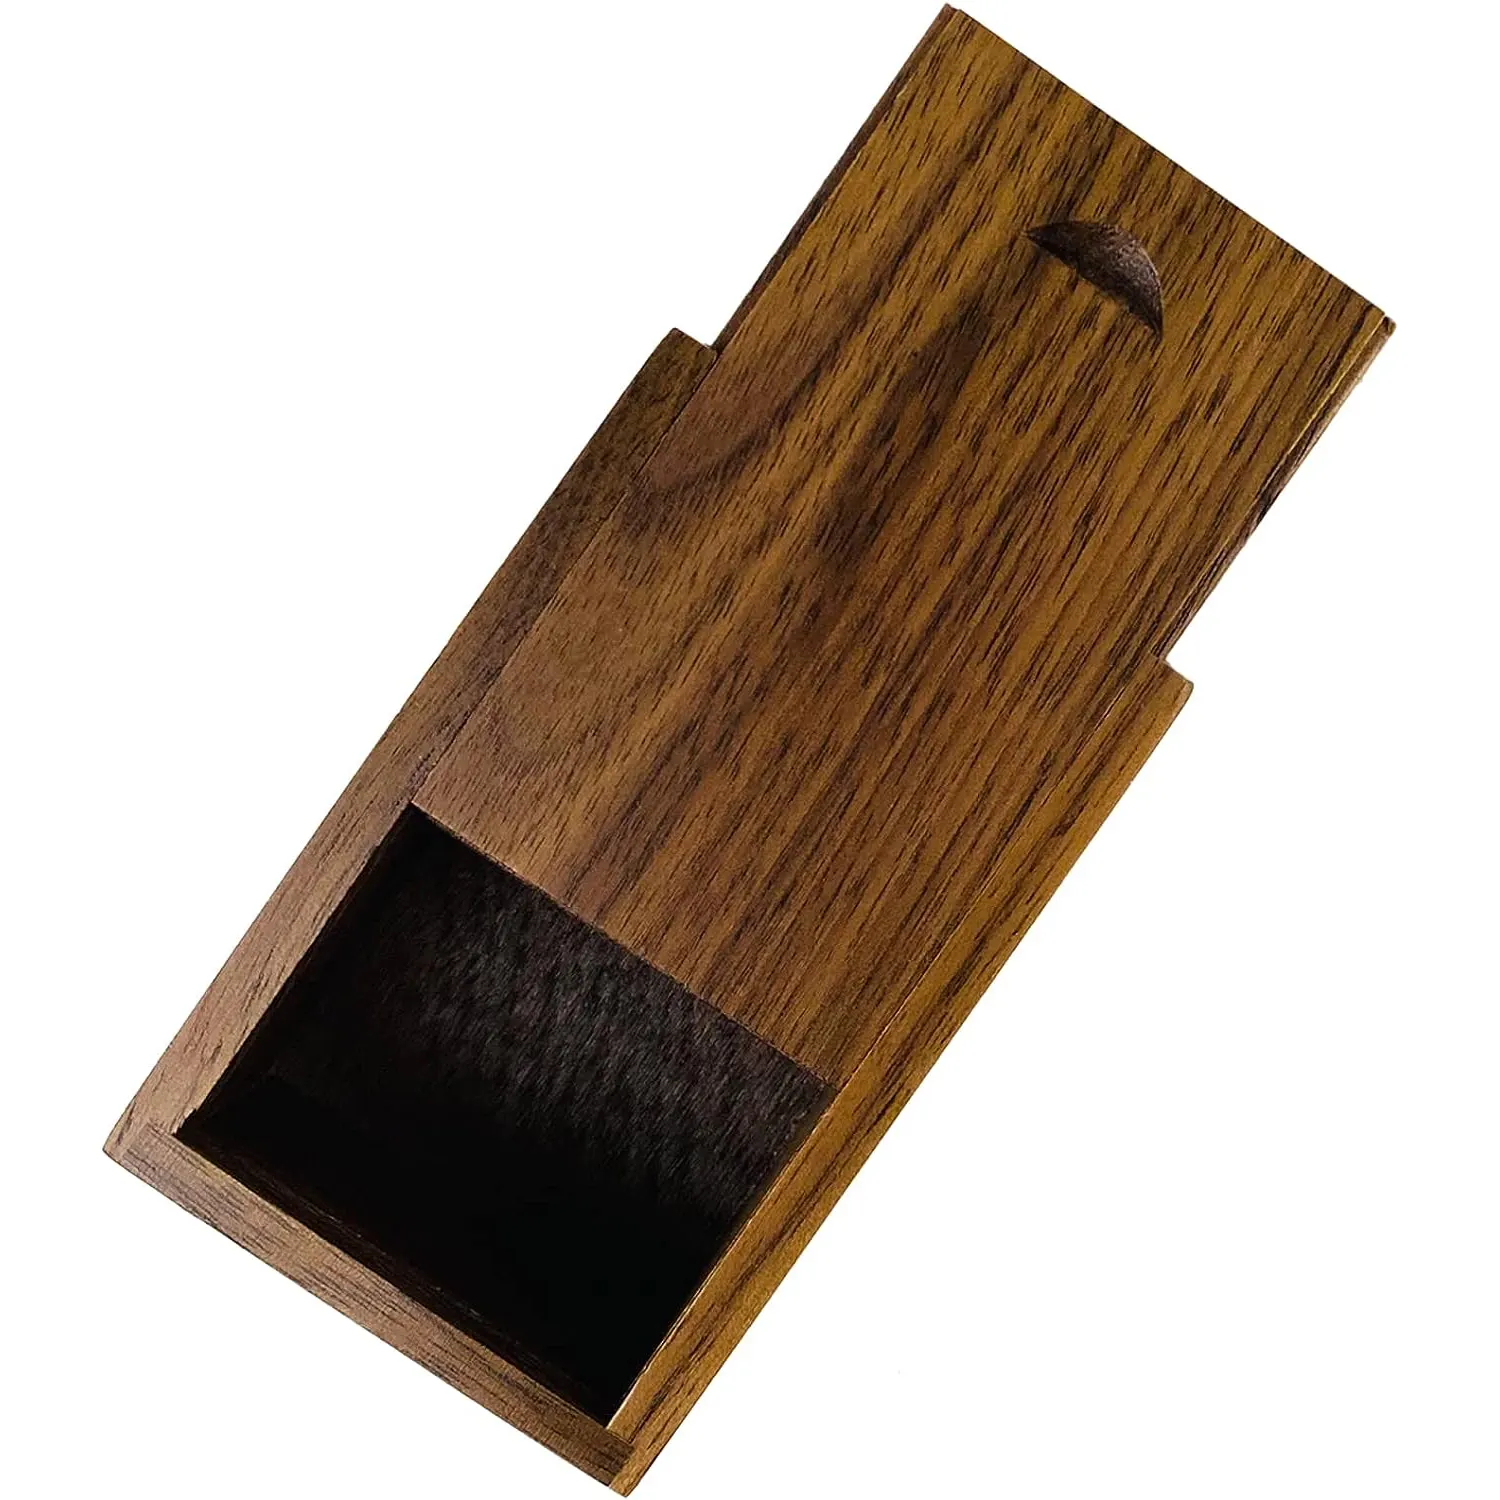 슬라이딩 뚜껑이있는 작은 나무 상자 커플을위한 결혼 선물을위한 뚜껑이있는 호두 나무 상자 독특한